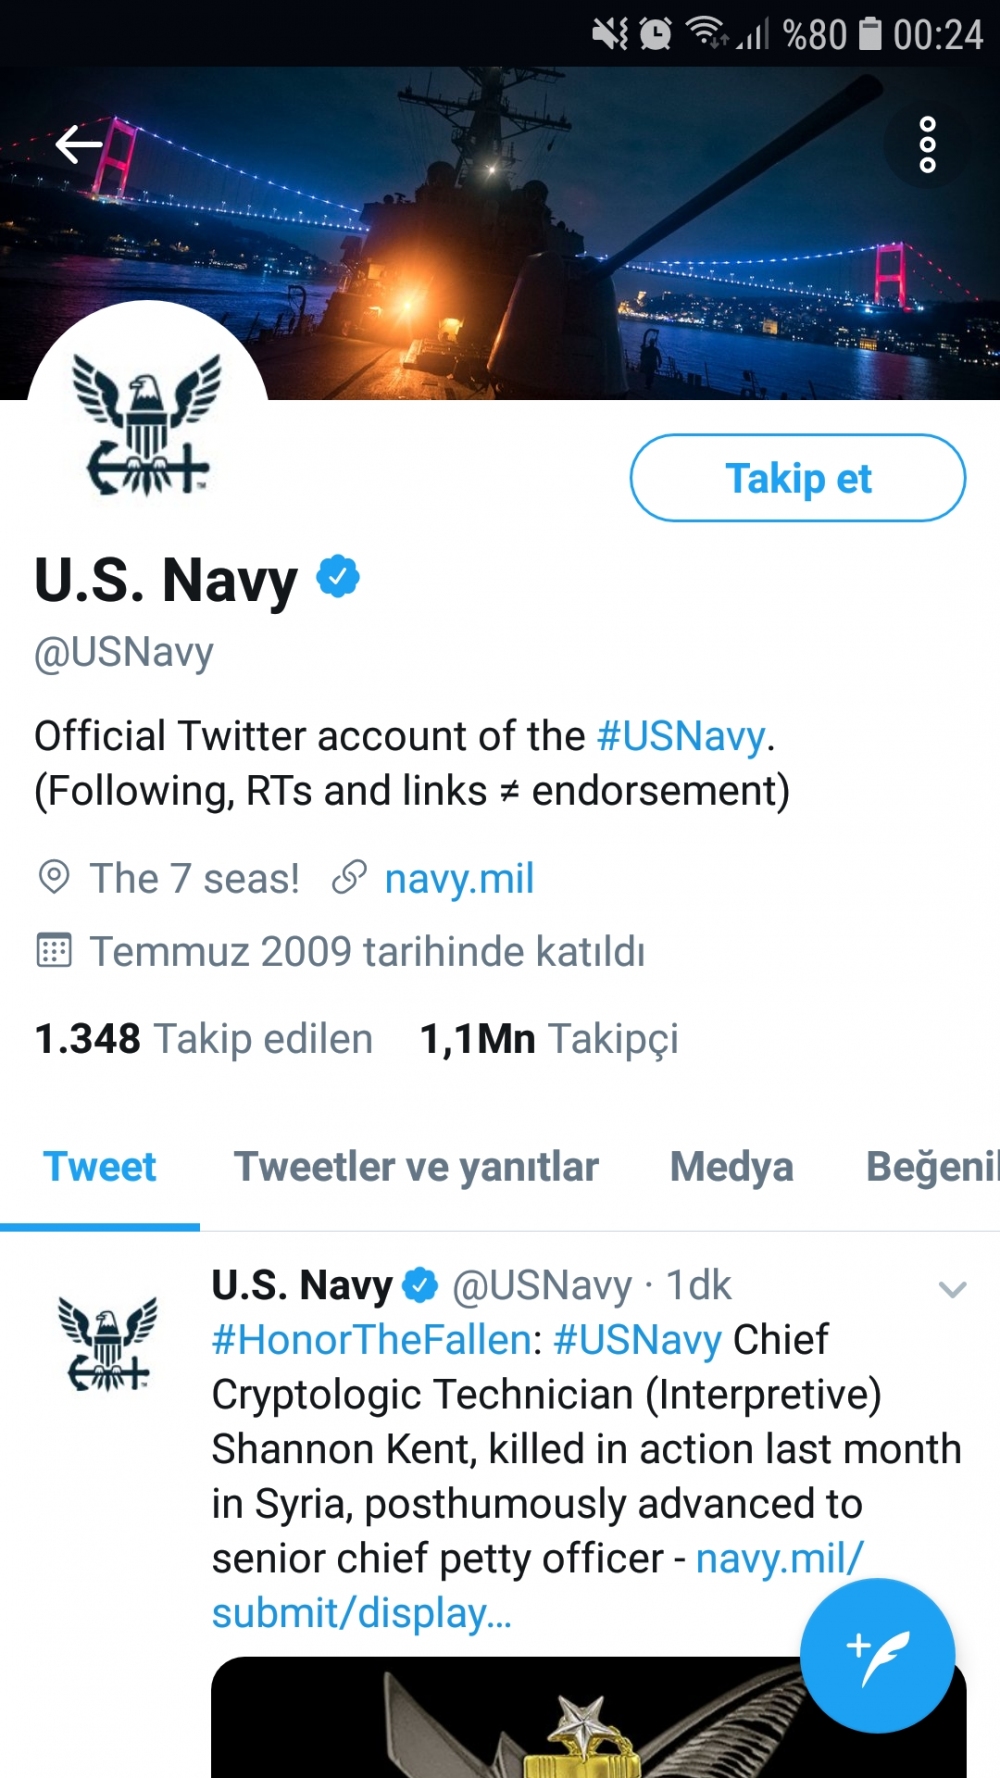 Abd deniz kuvvetlerin resmi twitter hesabinda savaş gemisiyle istanbul boğazının resmi var yorumunuz nedir?